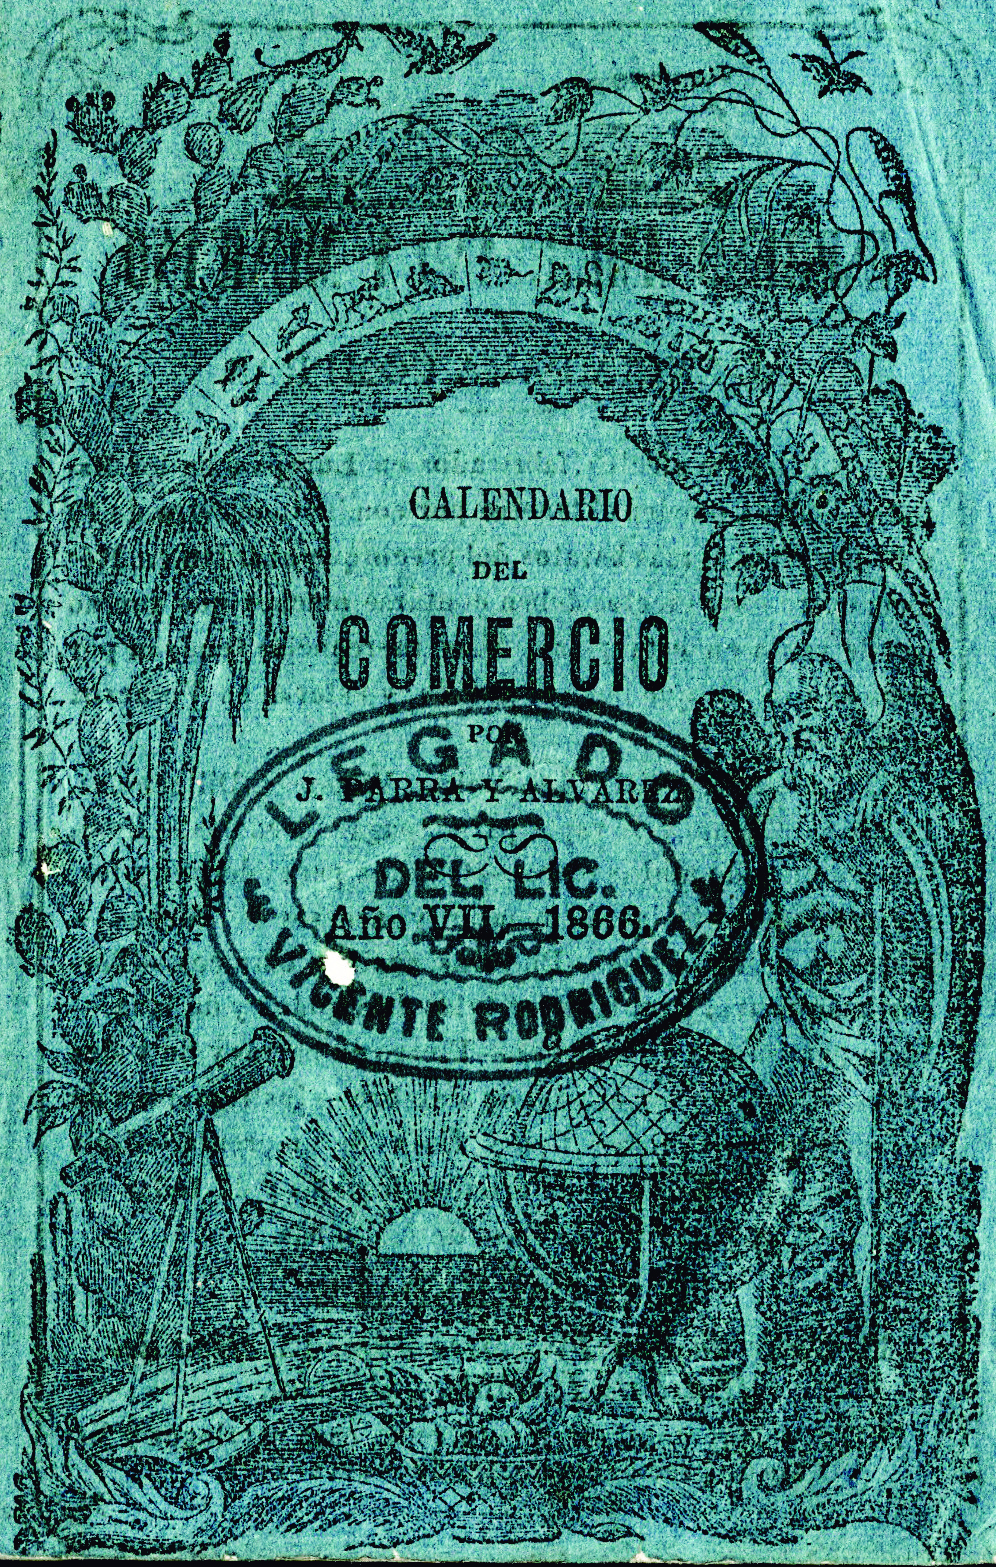 Calendario del Comercio por J. Parra y Alvarez para el año de 1866. Arreglado al meridiano de México.